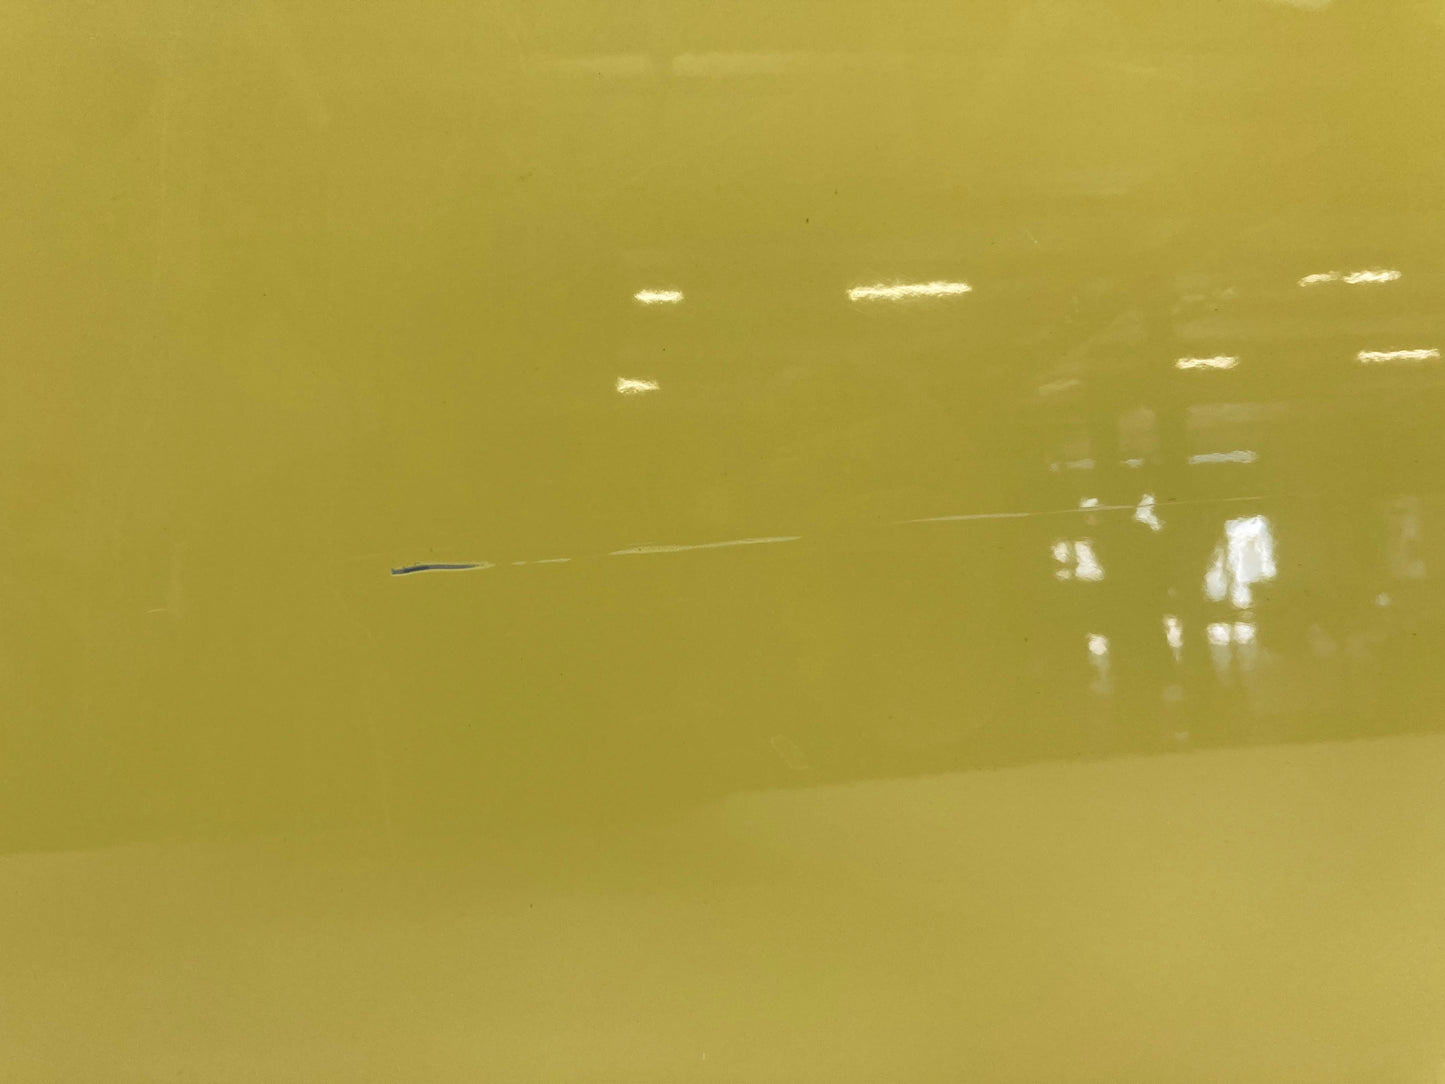 Mini Cooper Right Front Door Shell Interchange Yellow 41002755936 07-15 R5x 429